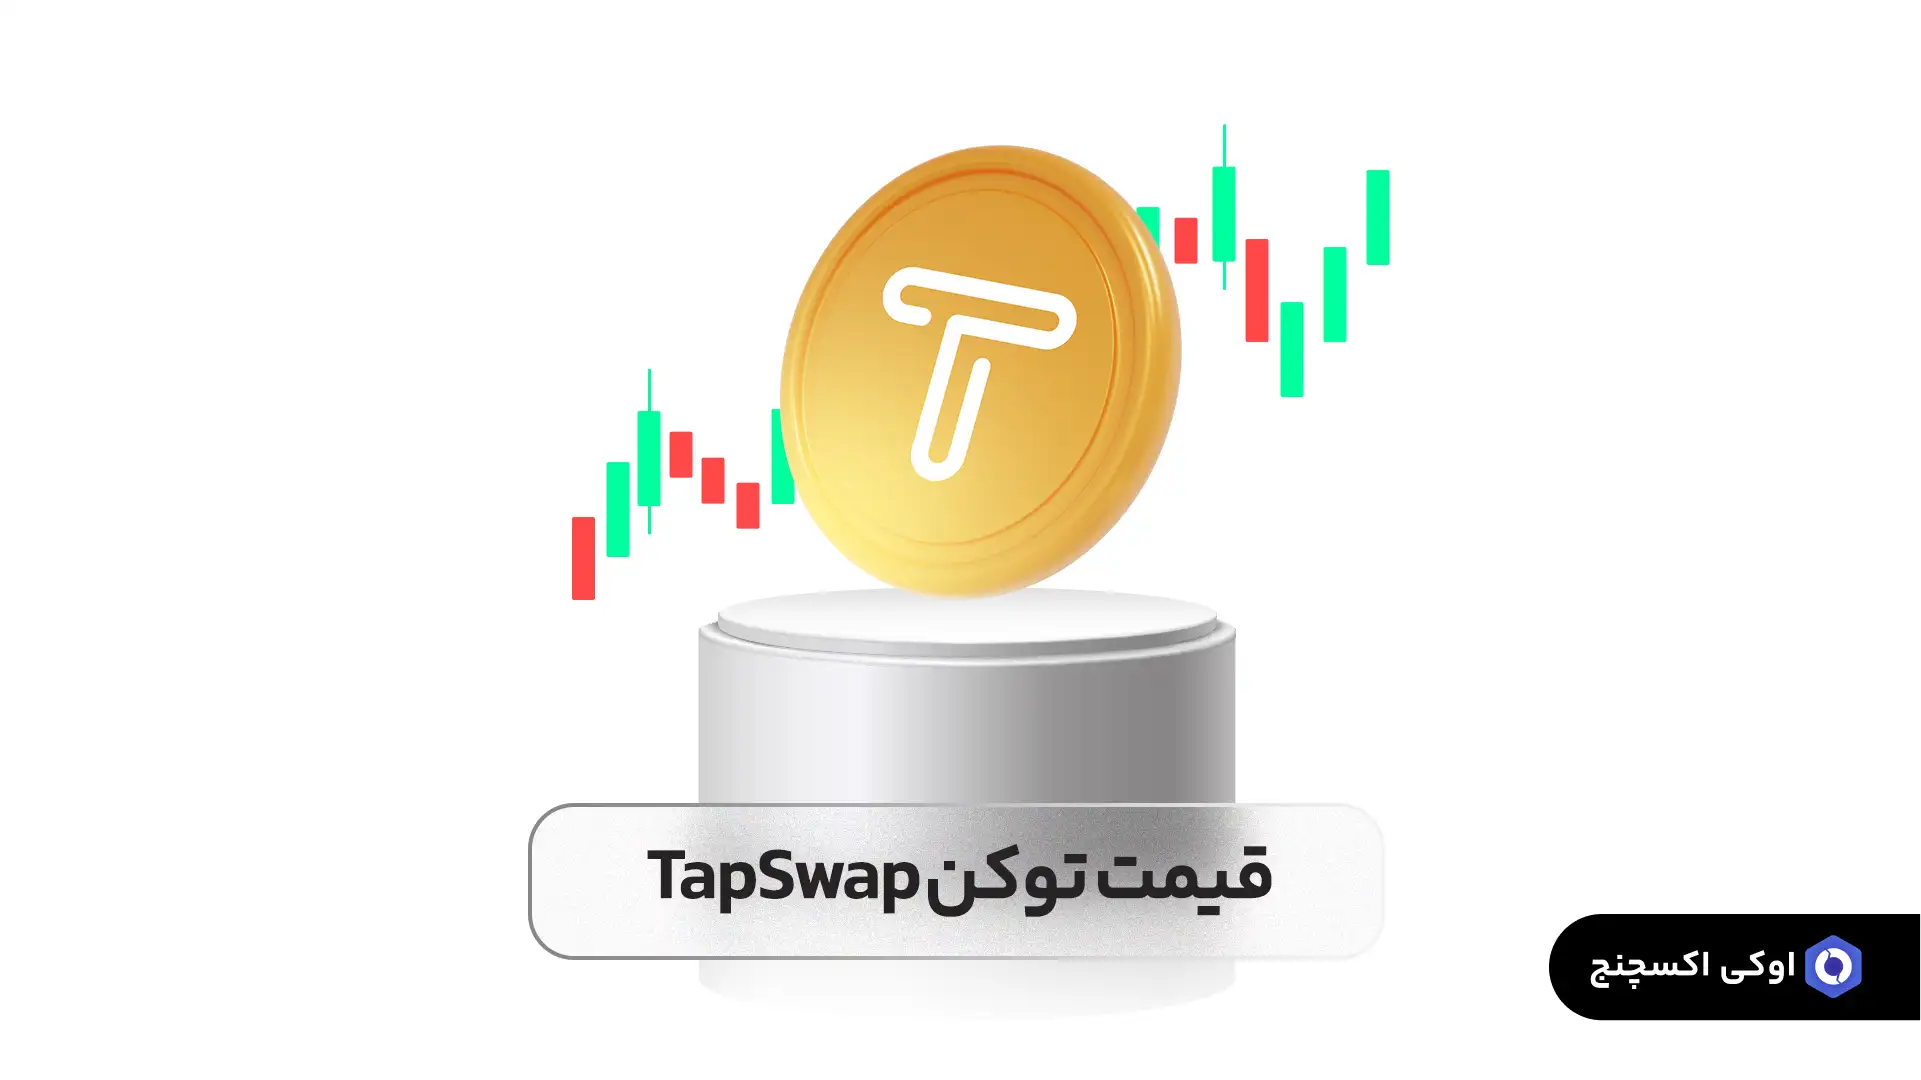 قیمت تپ سواپ (tap swap)